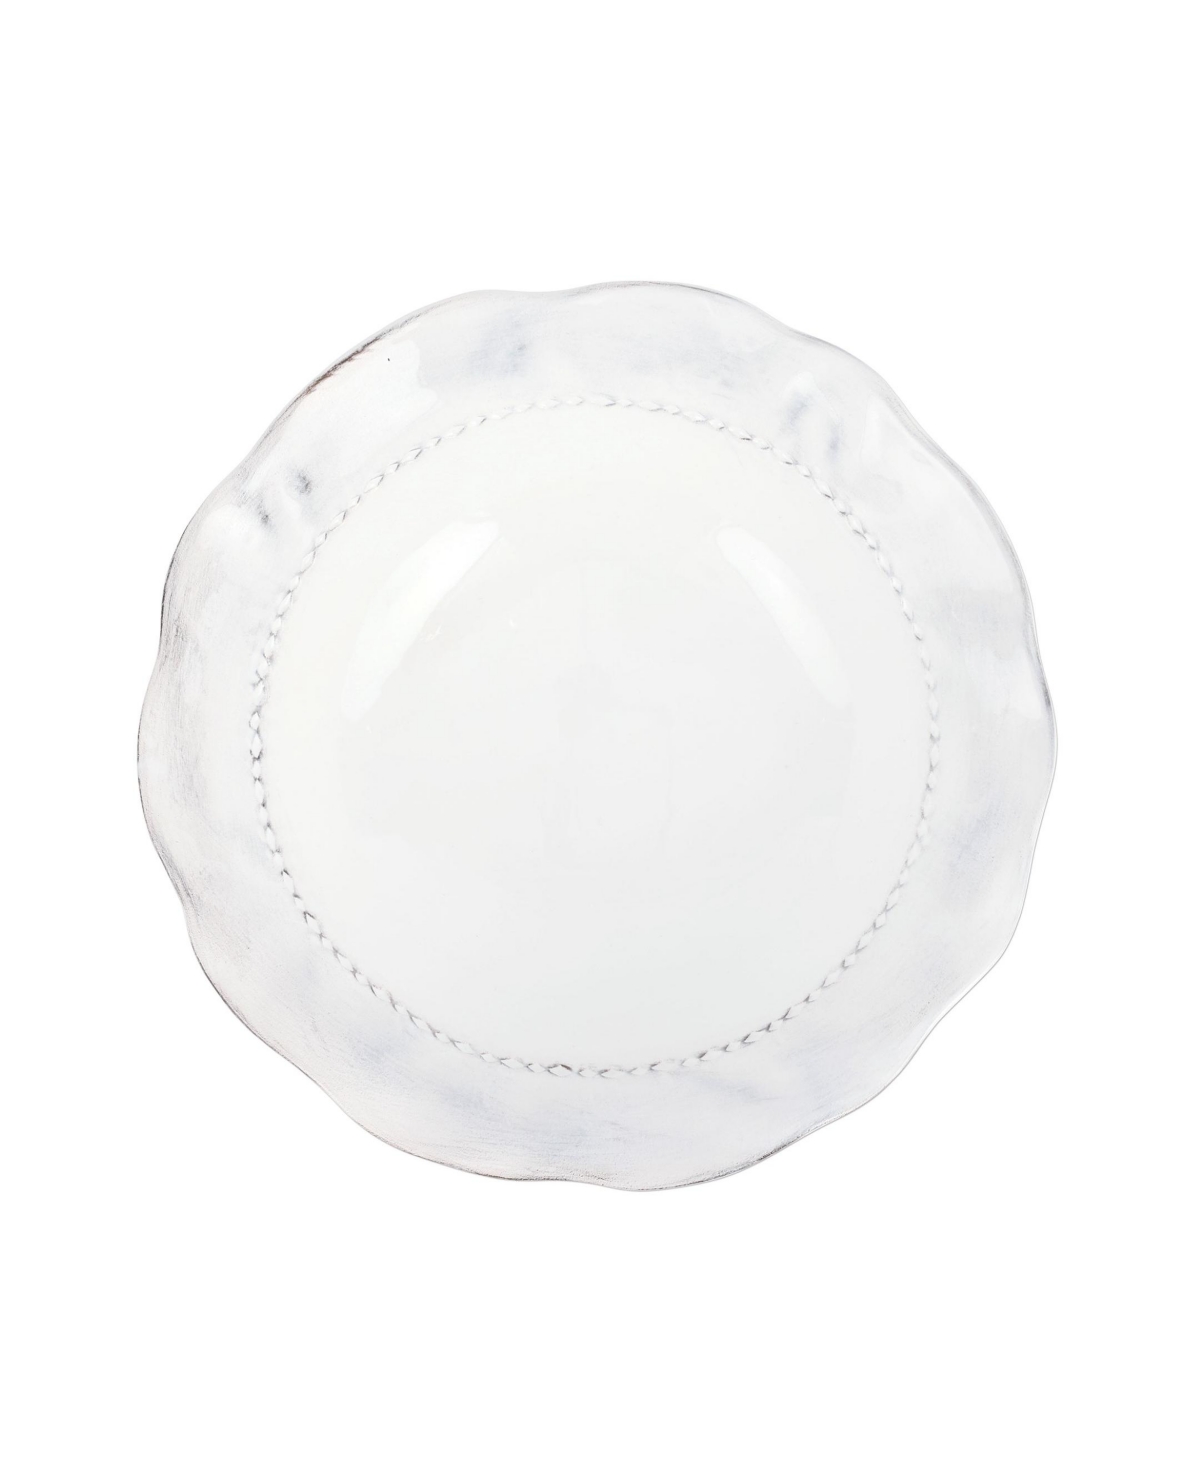 Vietri Giorno Medium Serving Bowl In White